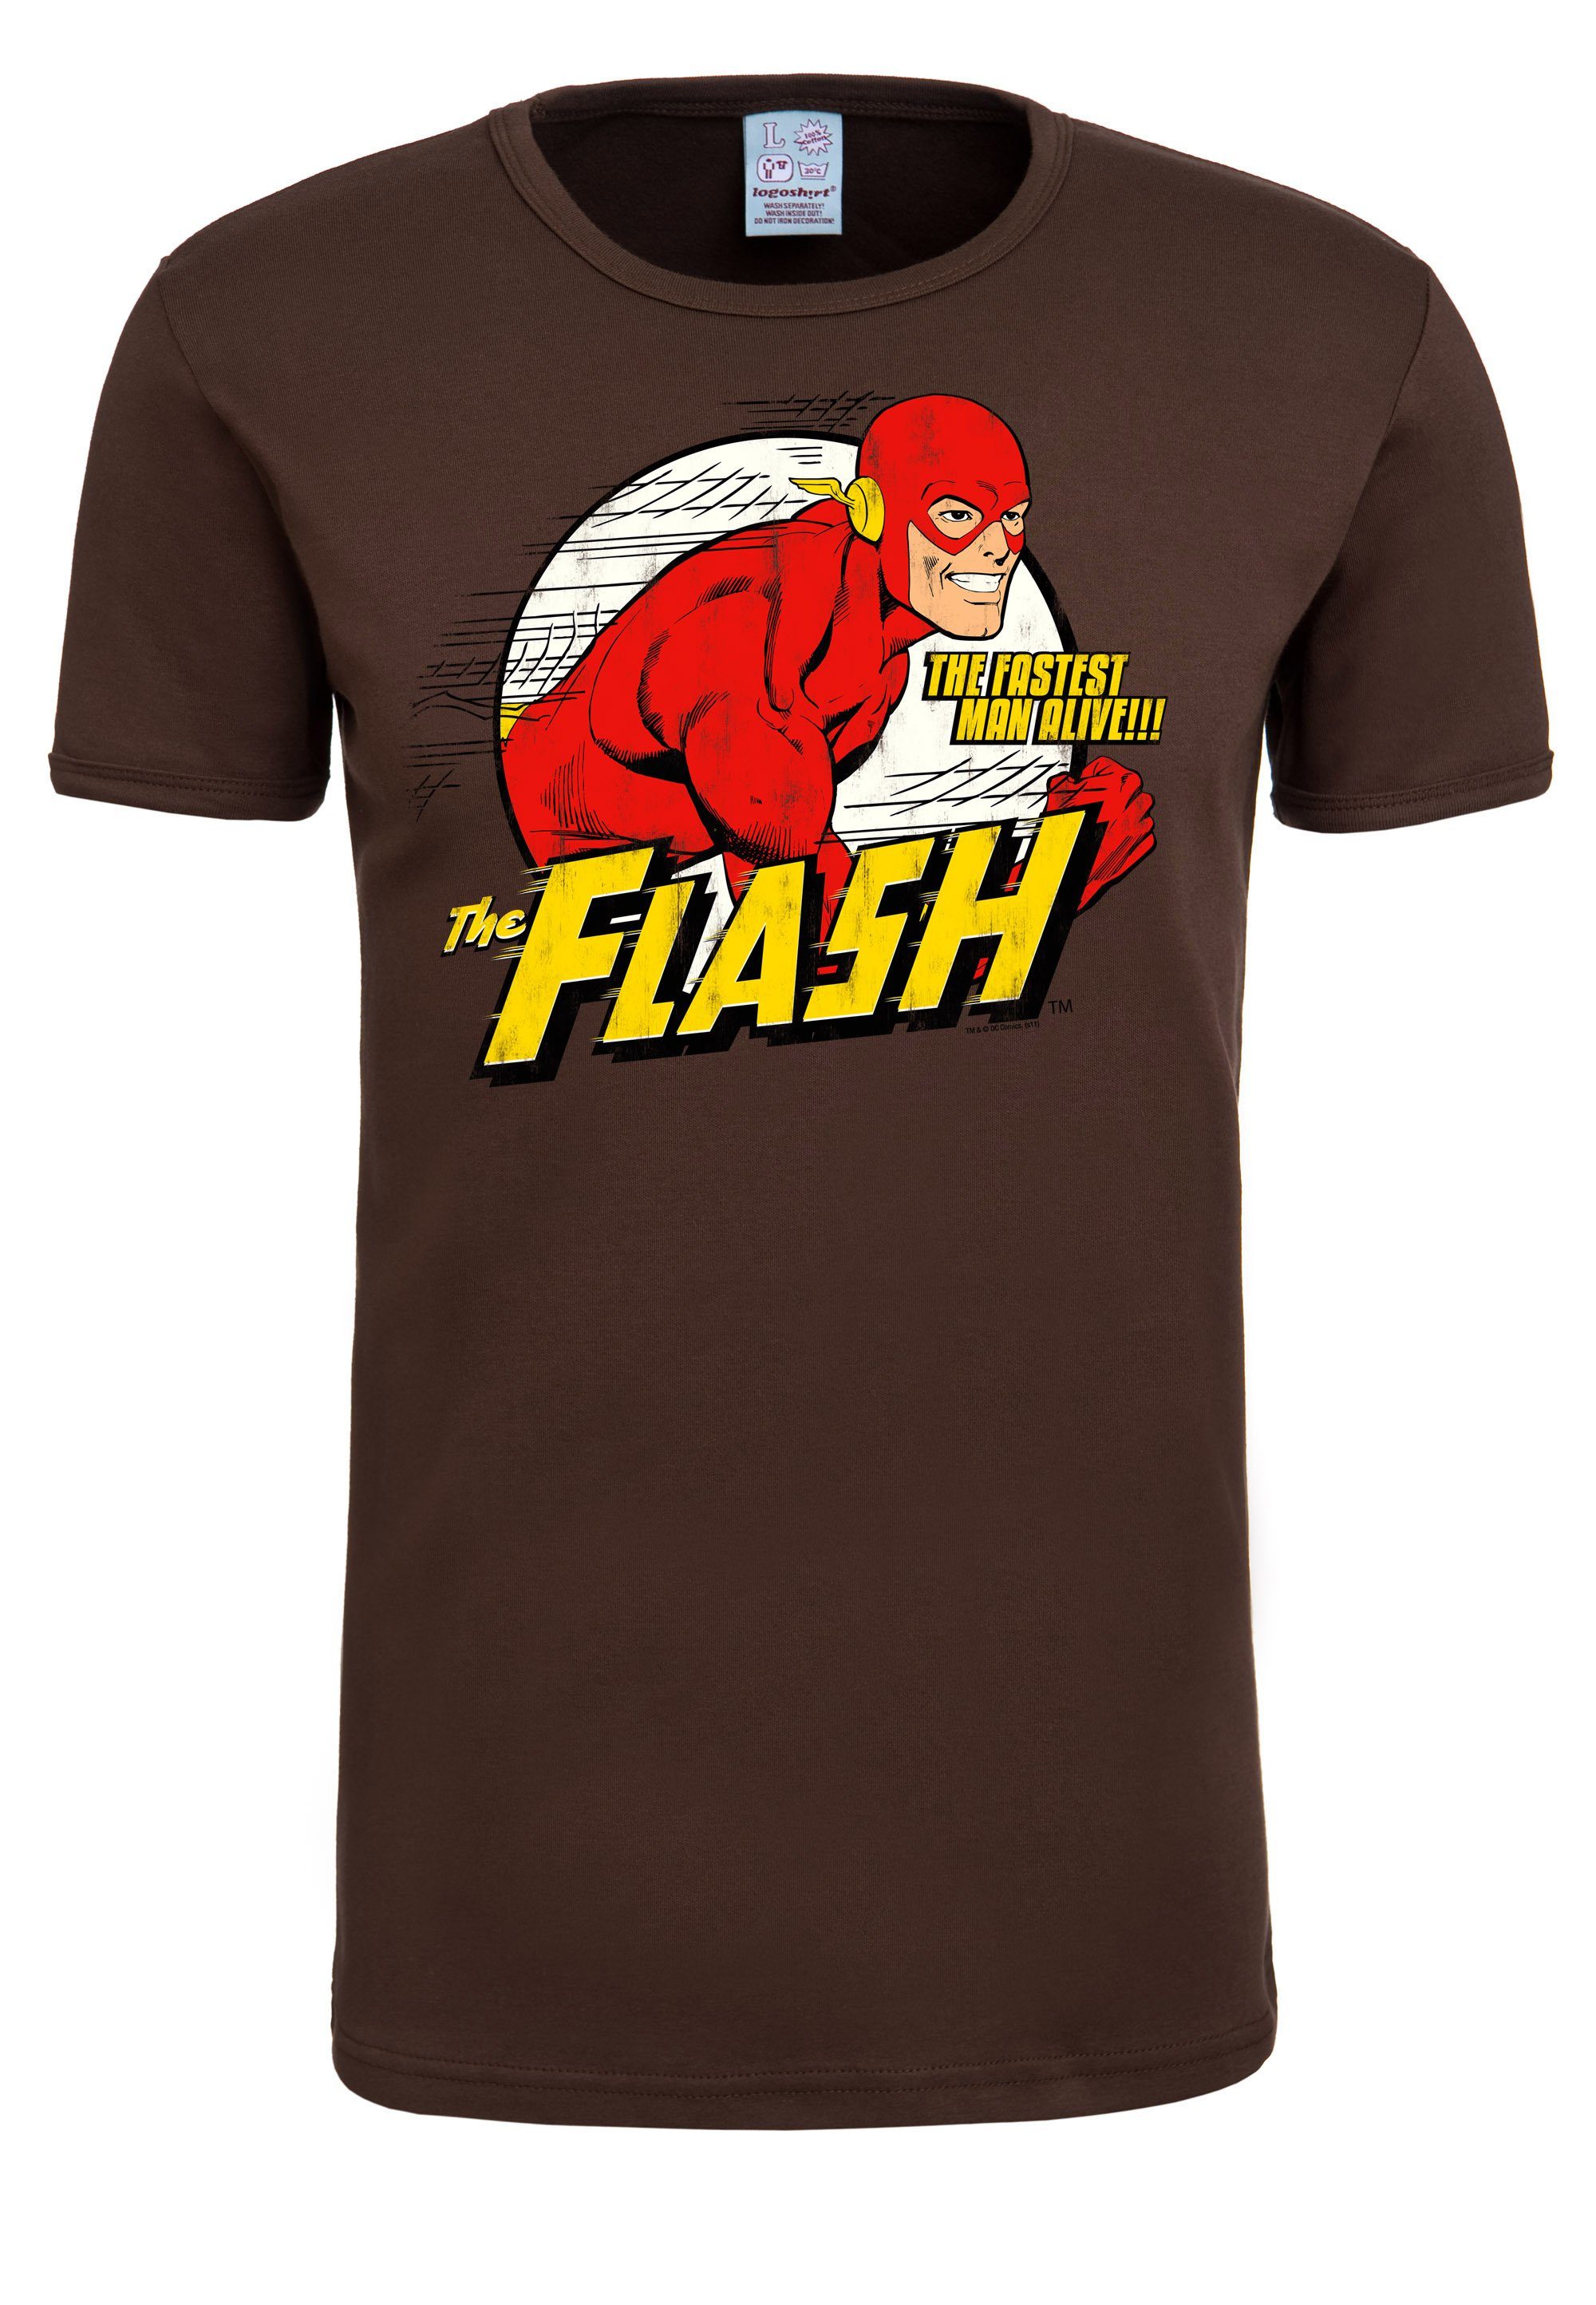 The T-Shirt Flash-Print, LOGOSHIRT mit Herren The The für T-Shirt Tolles von Flash Fastest tollem Logoshirt Man Alive